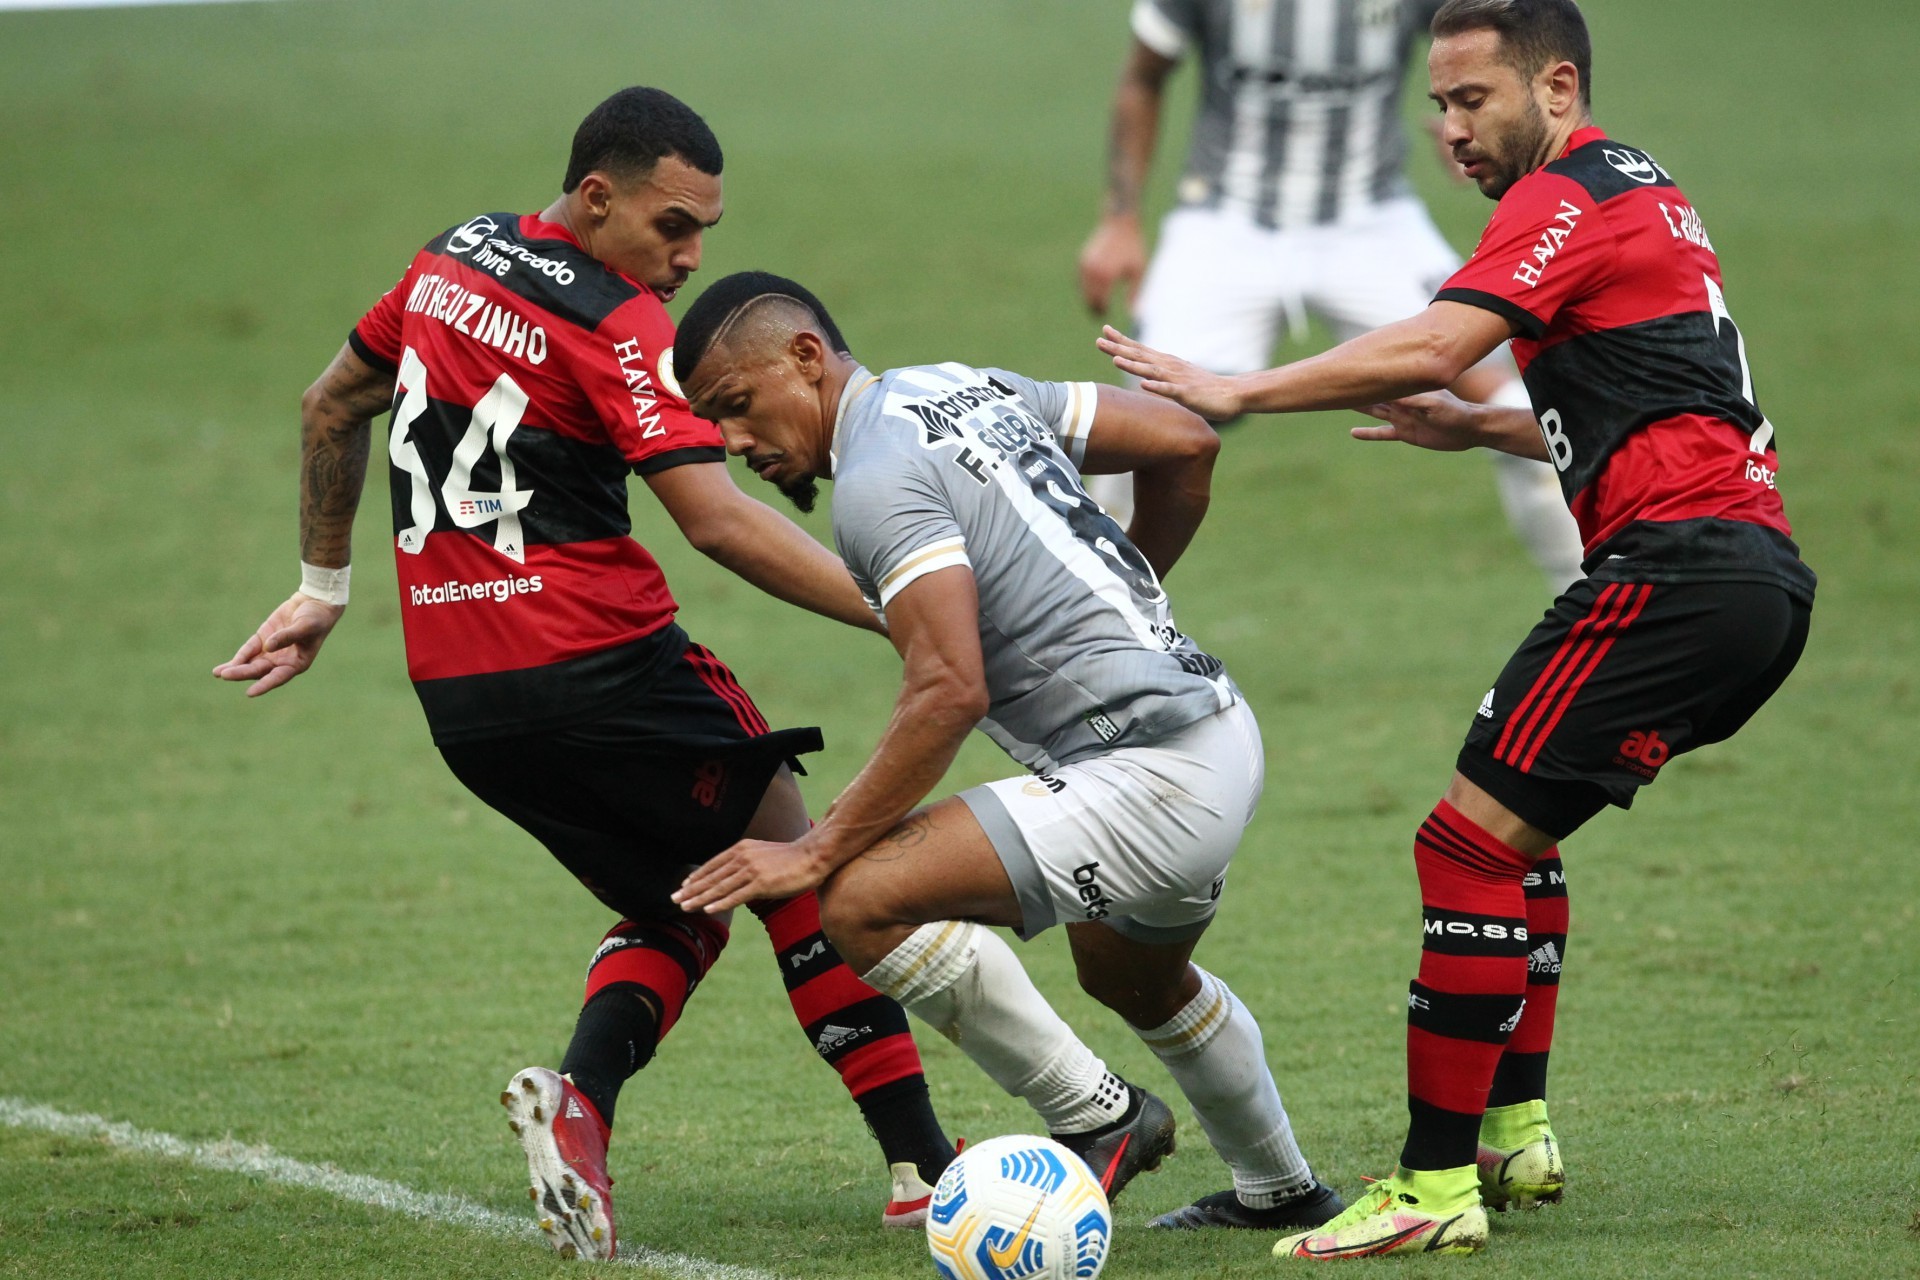 Fernando Sobral, jogador do Ceará em disputa de bola no Jogo pelo Campeonato Brasileiro entre Ceará e Flamengo (Foto: Fabio Lima/O POVO)